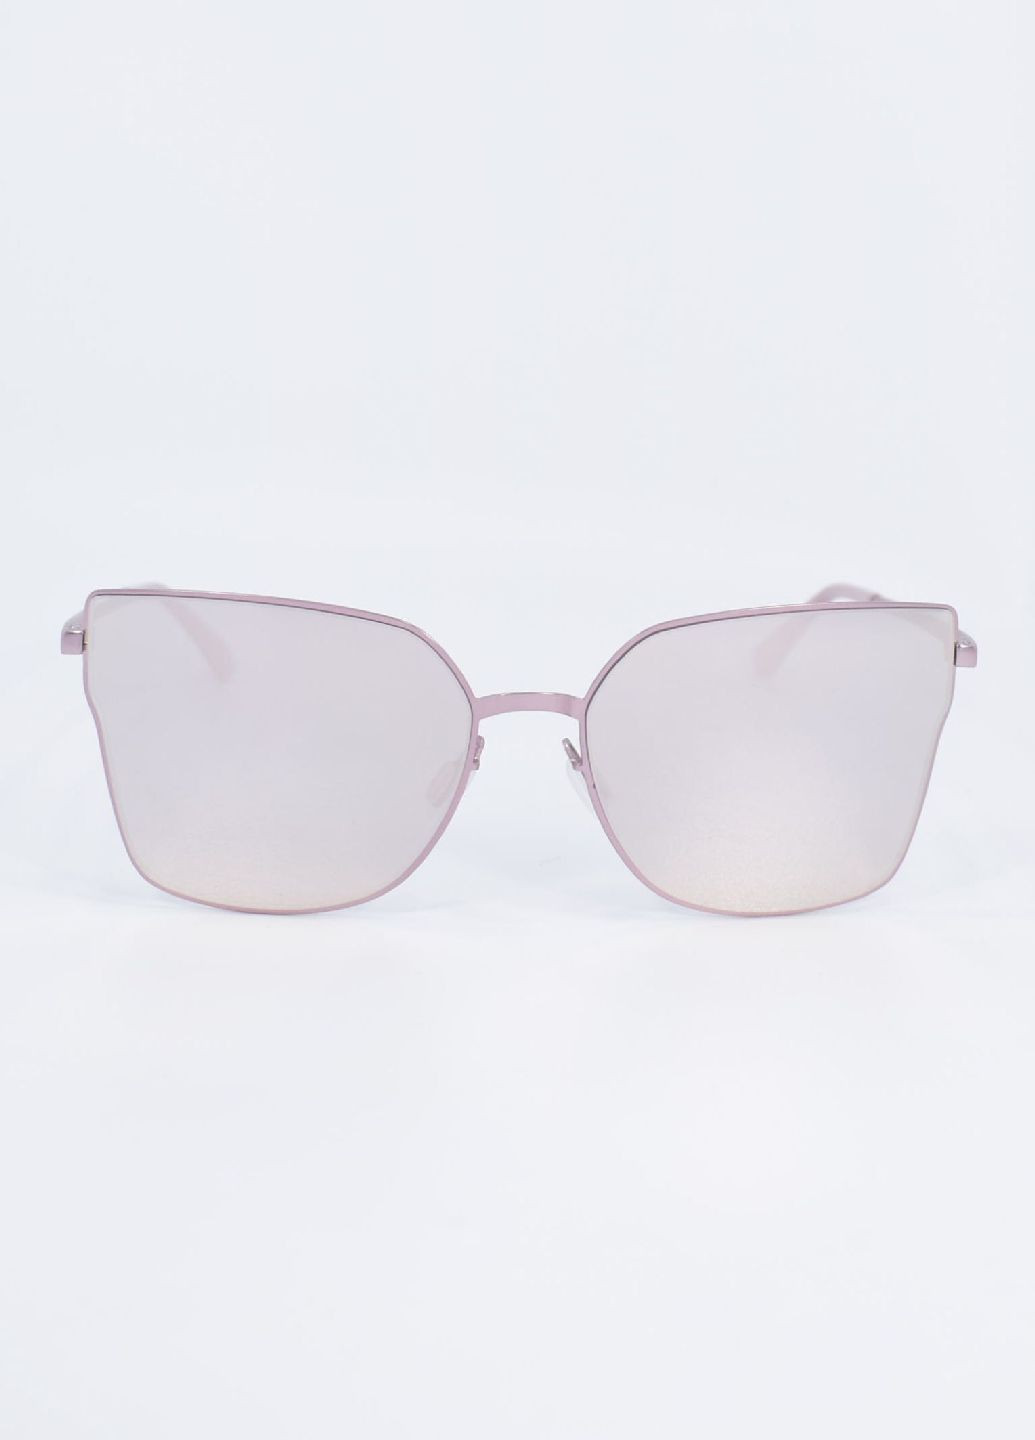 Солнцезащитные очки 100156 Merlini пудровые